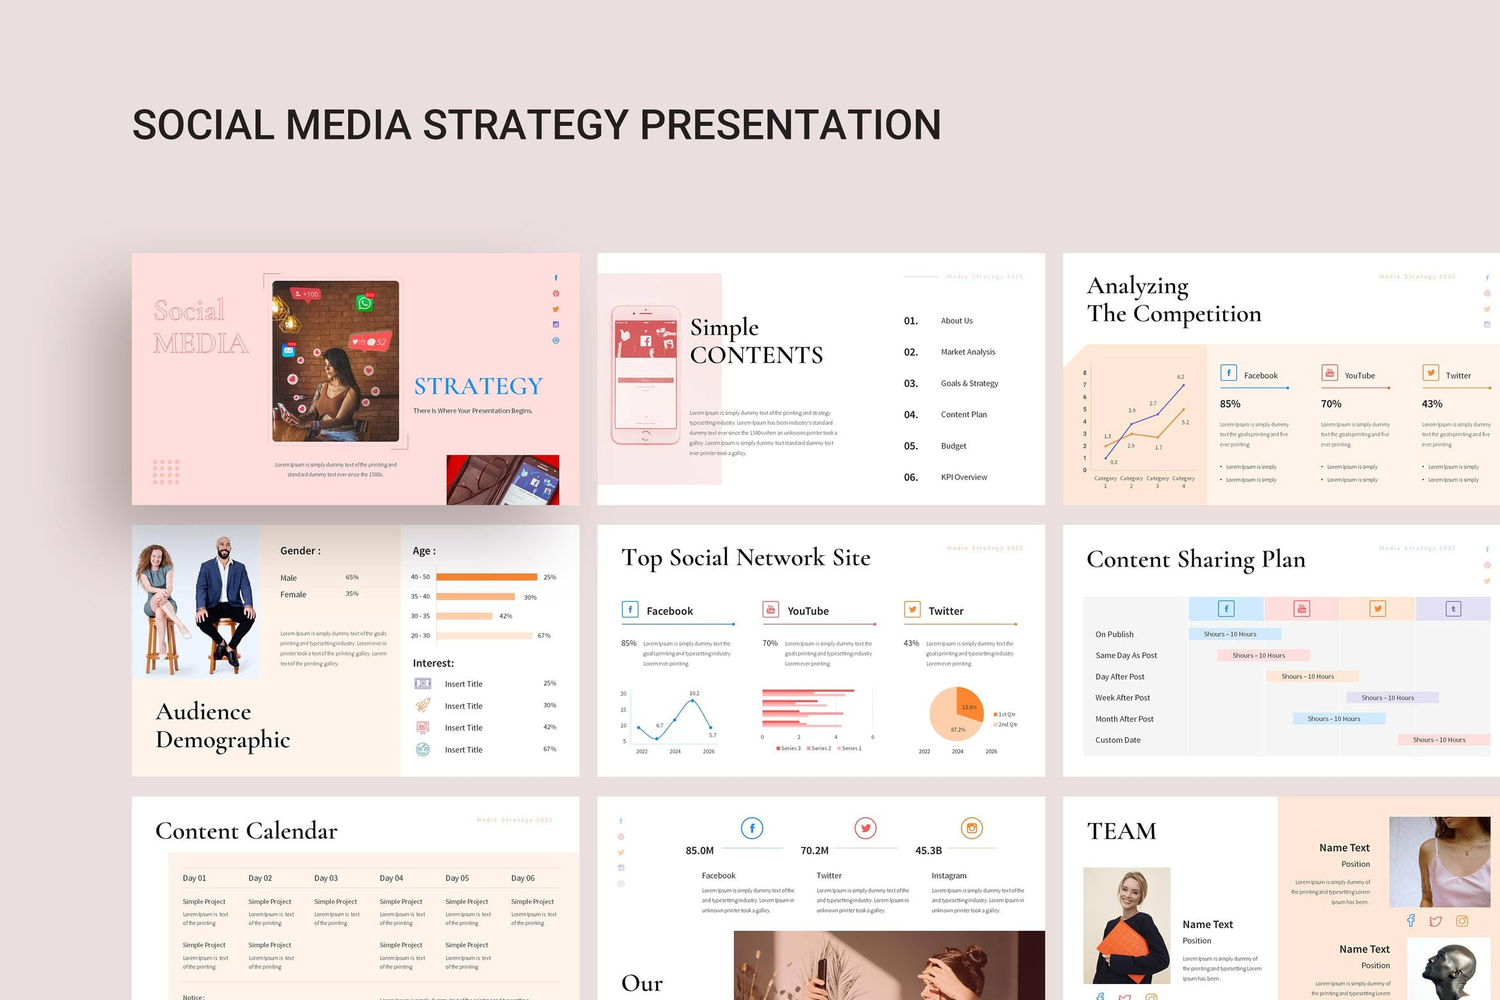 4683 市场调查报告行业数据分析图表PPT+Keynote模版 Social Media Strategy Keynote Presentation@GOOODME.COM